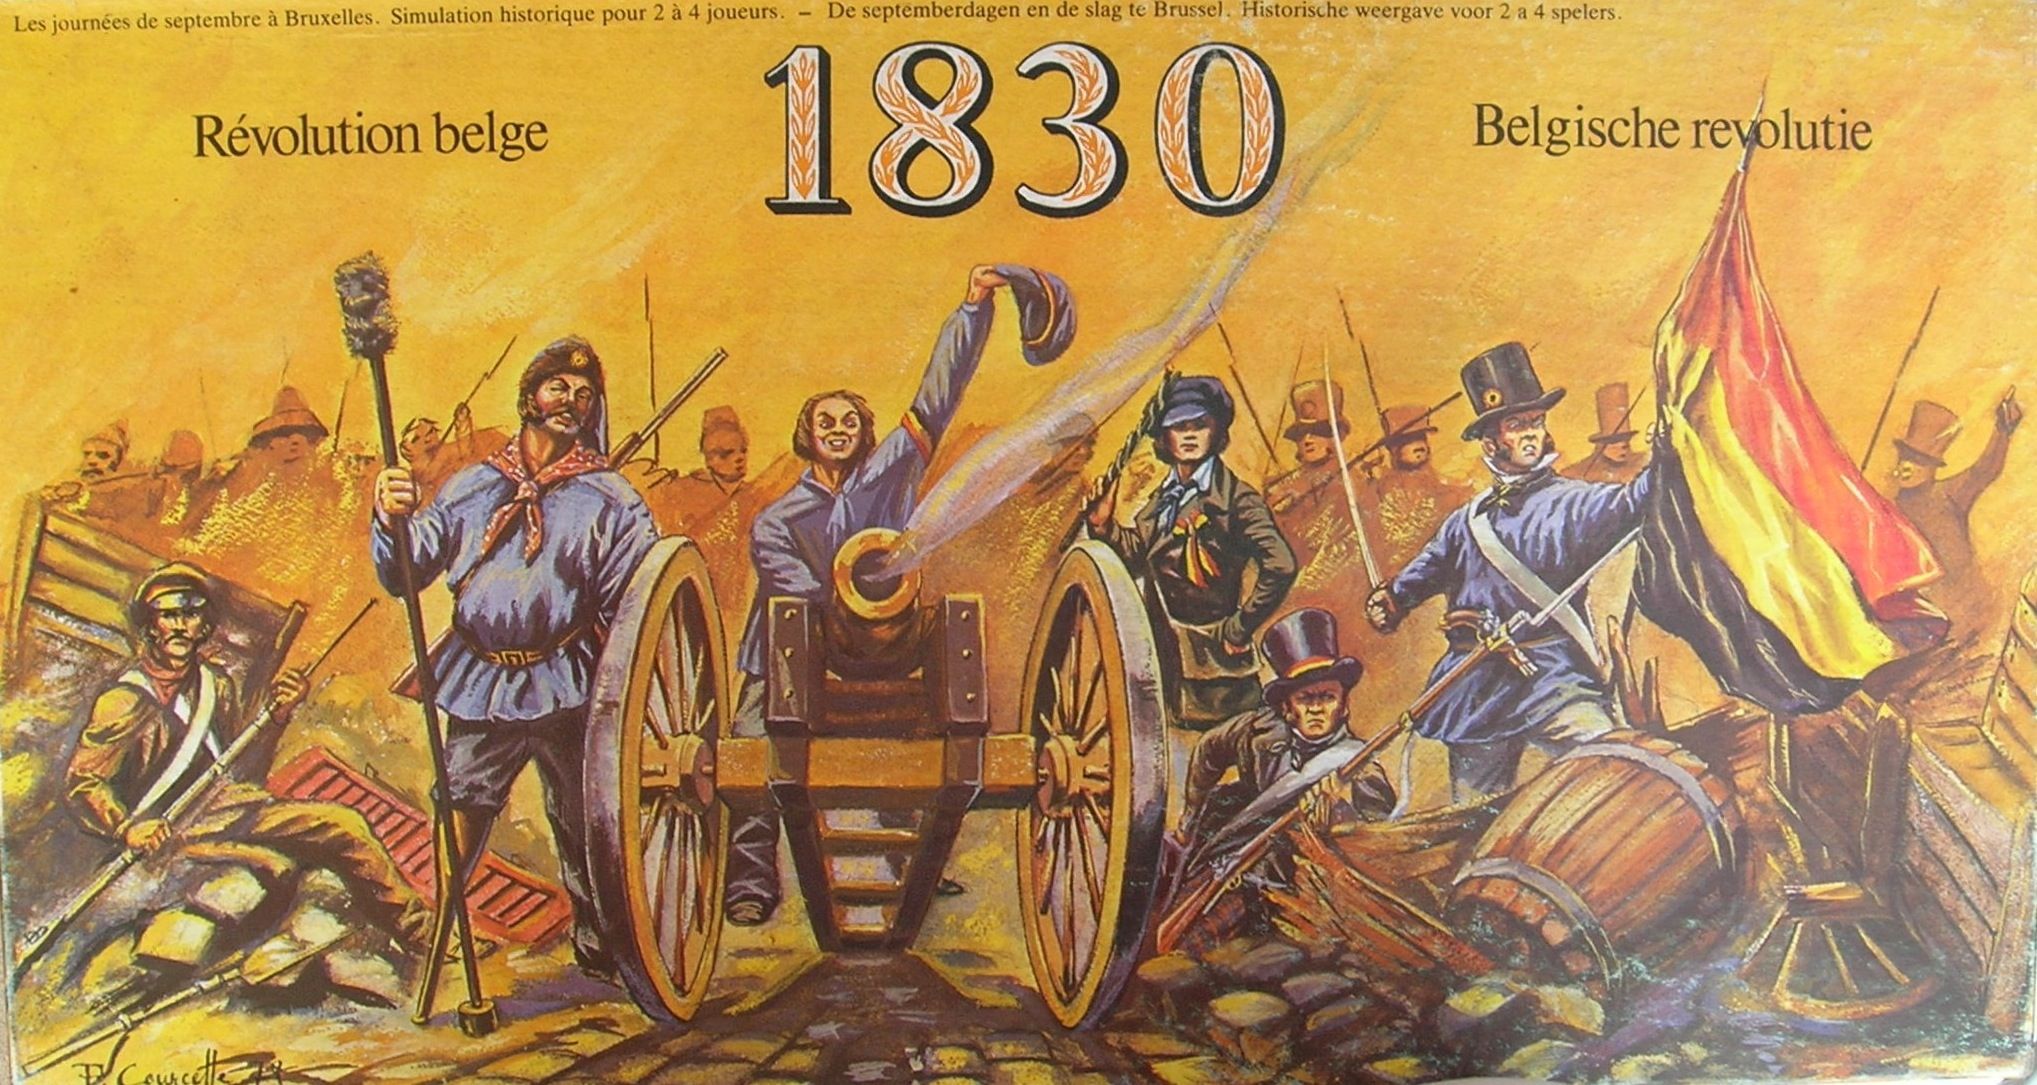 1830: Belgische Revolutie